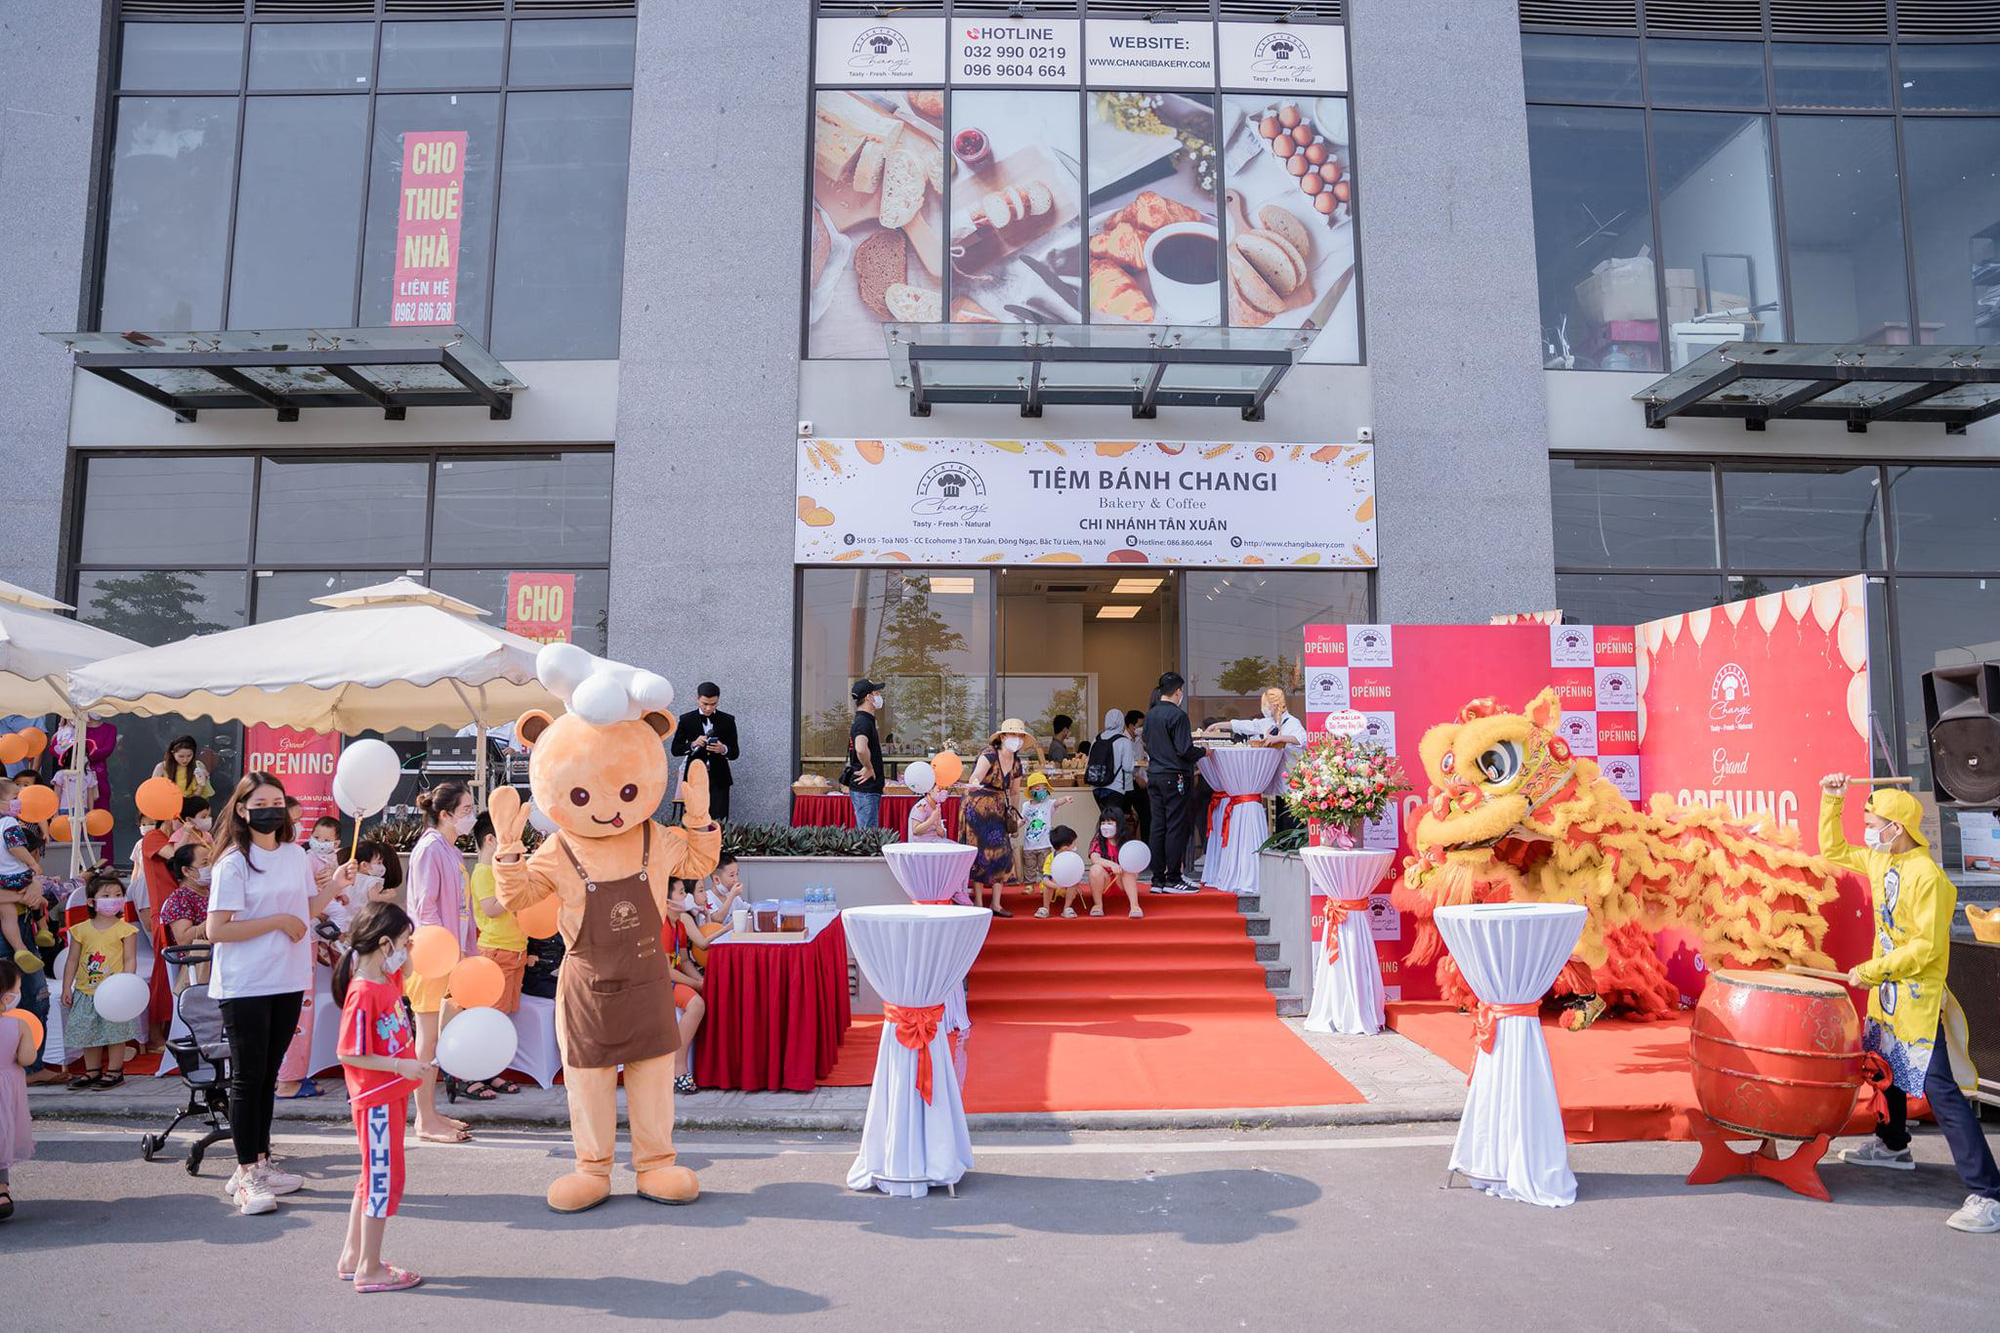 Khai trương cơ sở mới của Changi Bakery - tiệm bánh ngọt ngào dành cho giới trẻ - Ảnh 1.